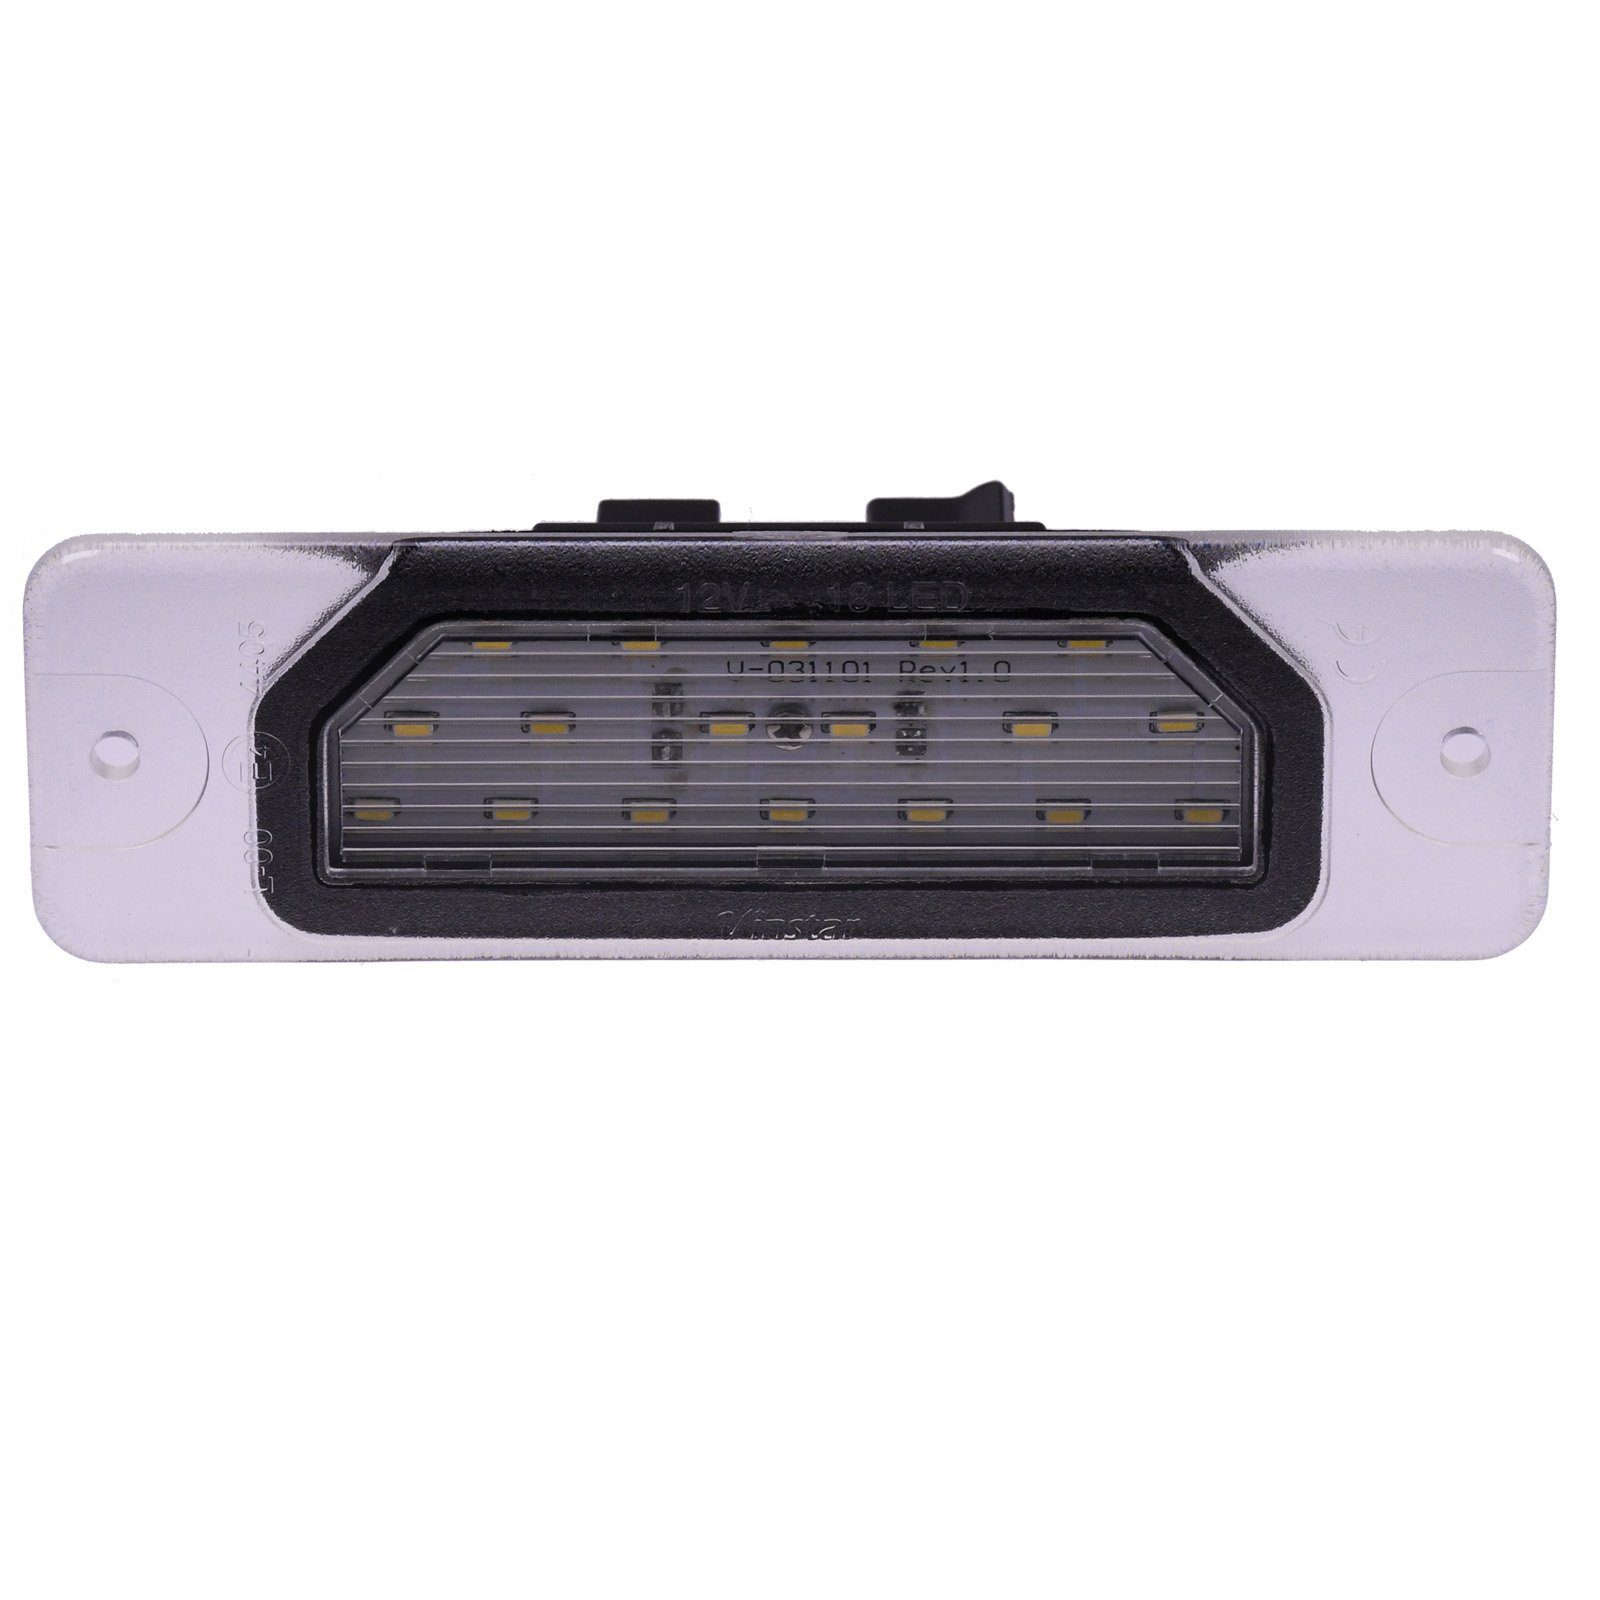 Fuga für i30 Infiniti mit: LED kompatibel NISSAN Maxima Vinstar M37 FX35 NISSAN, E-geprüft KFZ-Ersatzleuchte Q45 Kennzeichenbeleuchtung